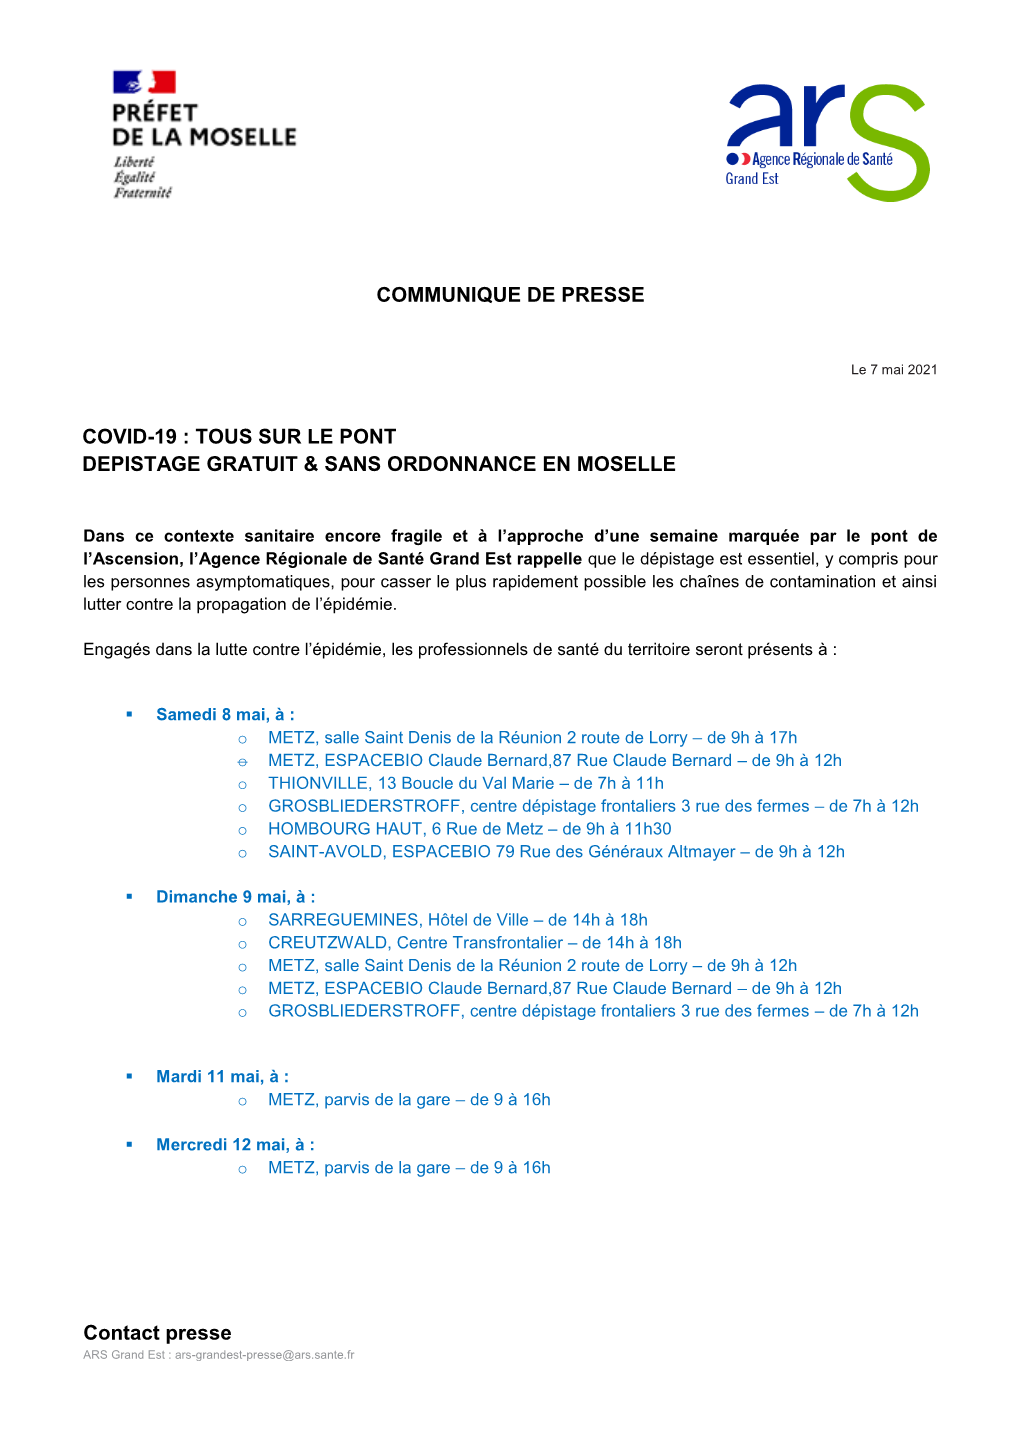 Contact Presse COMMUNIQUE DE PRESSE COVID-19 : TOUS SUR